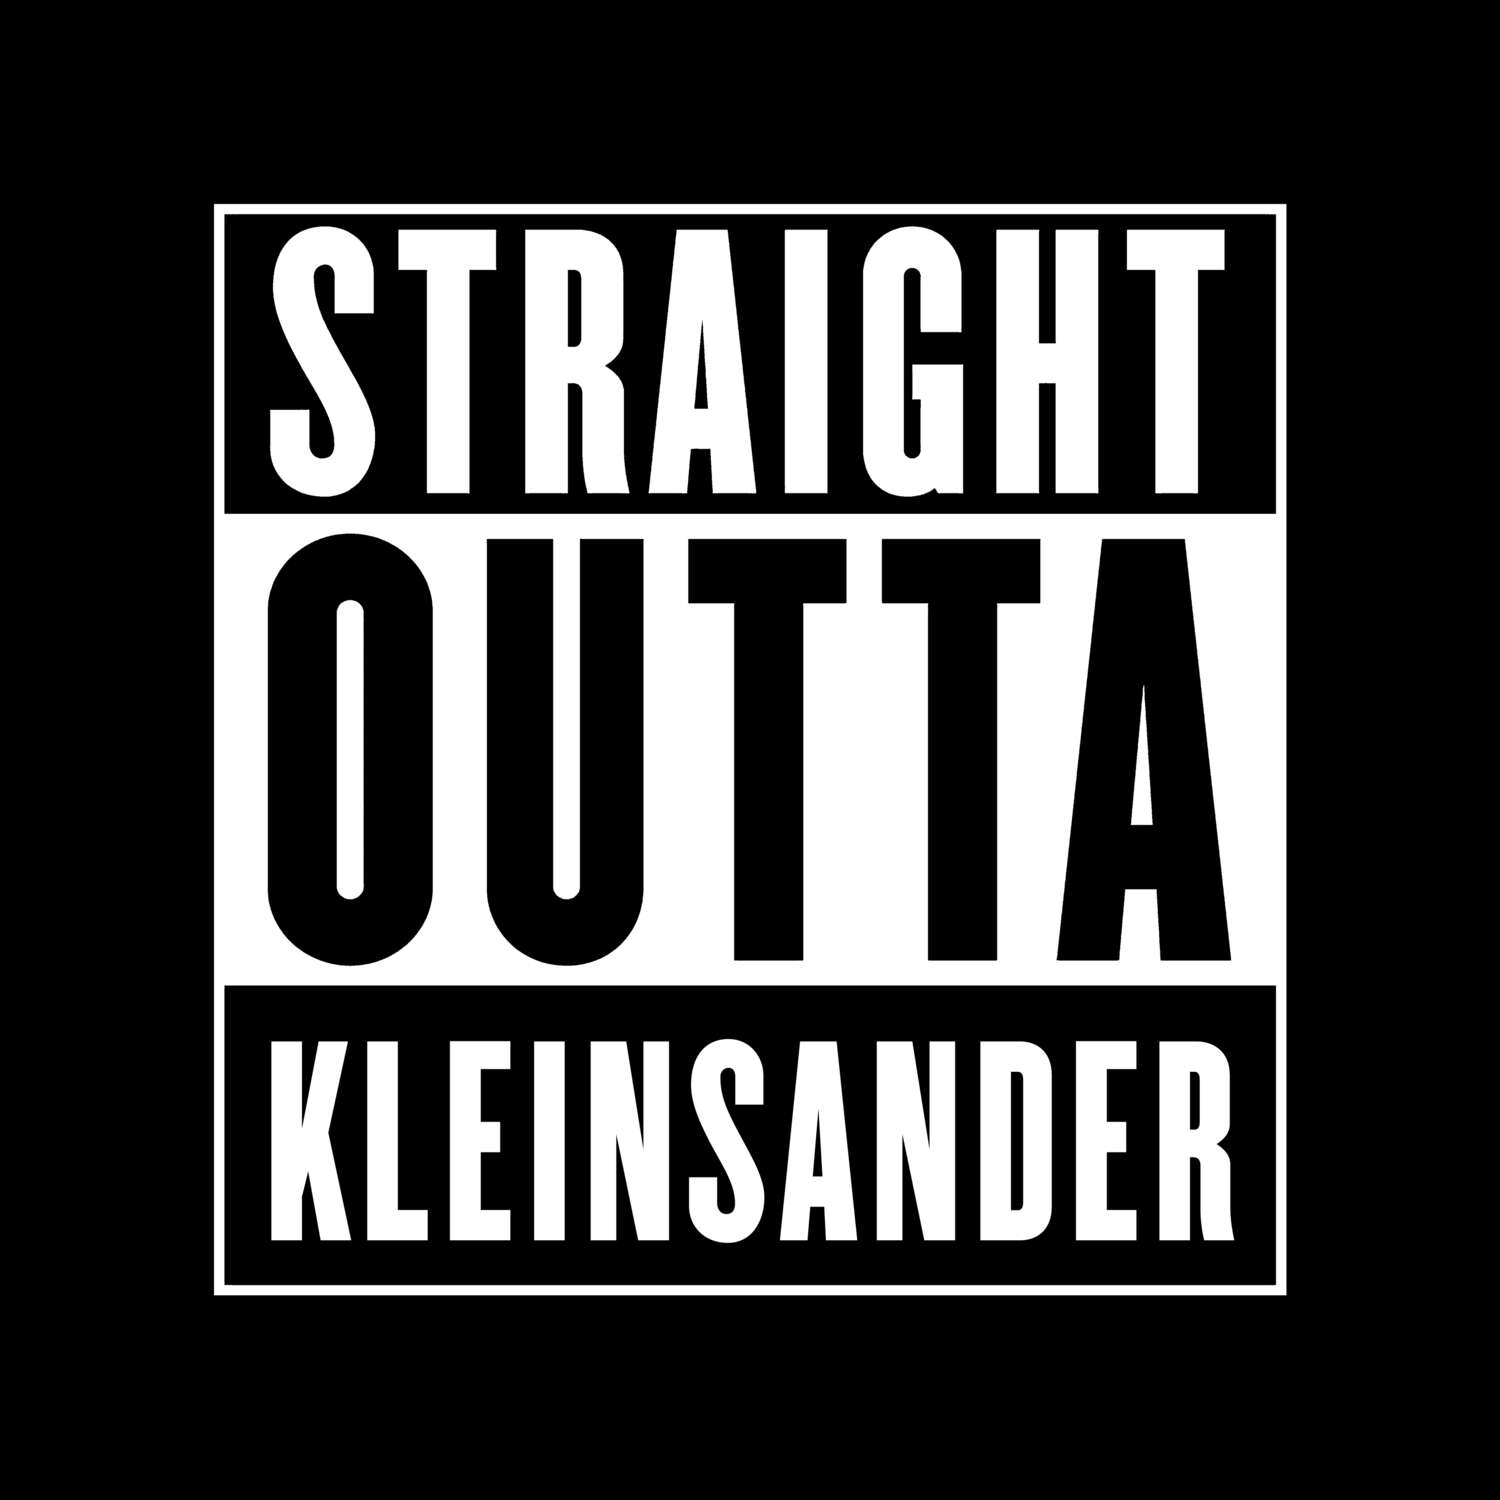 Kleinsander T-Shirt »Straight Outta«